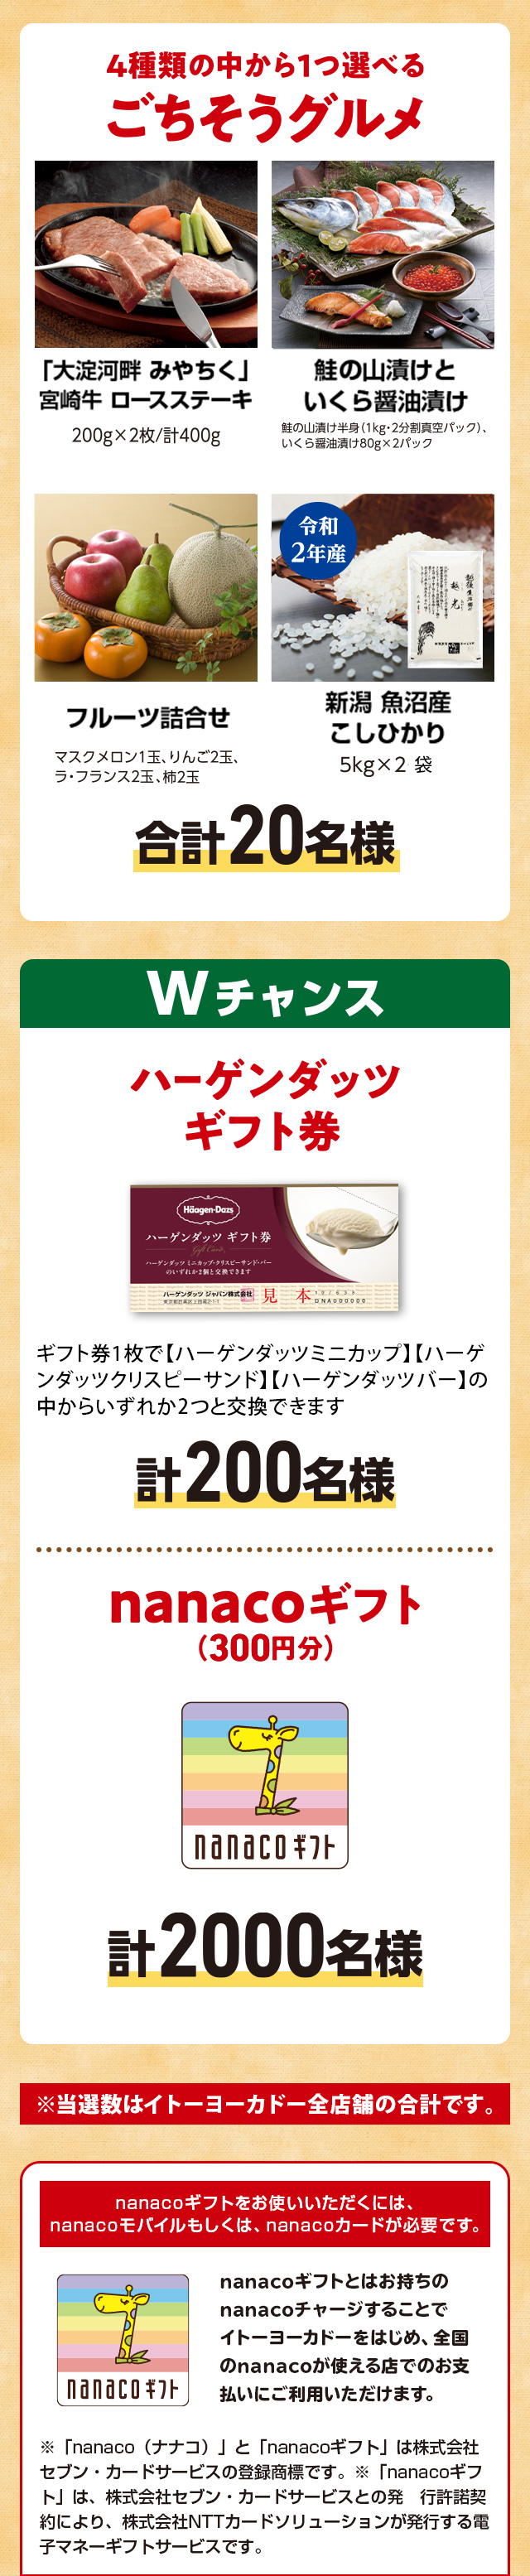 イトーヨーカドーのお買い上げレシート3000円以上でご応募いただけます。